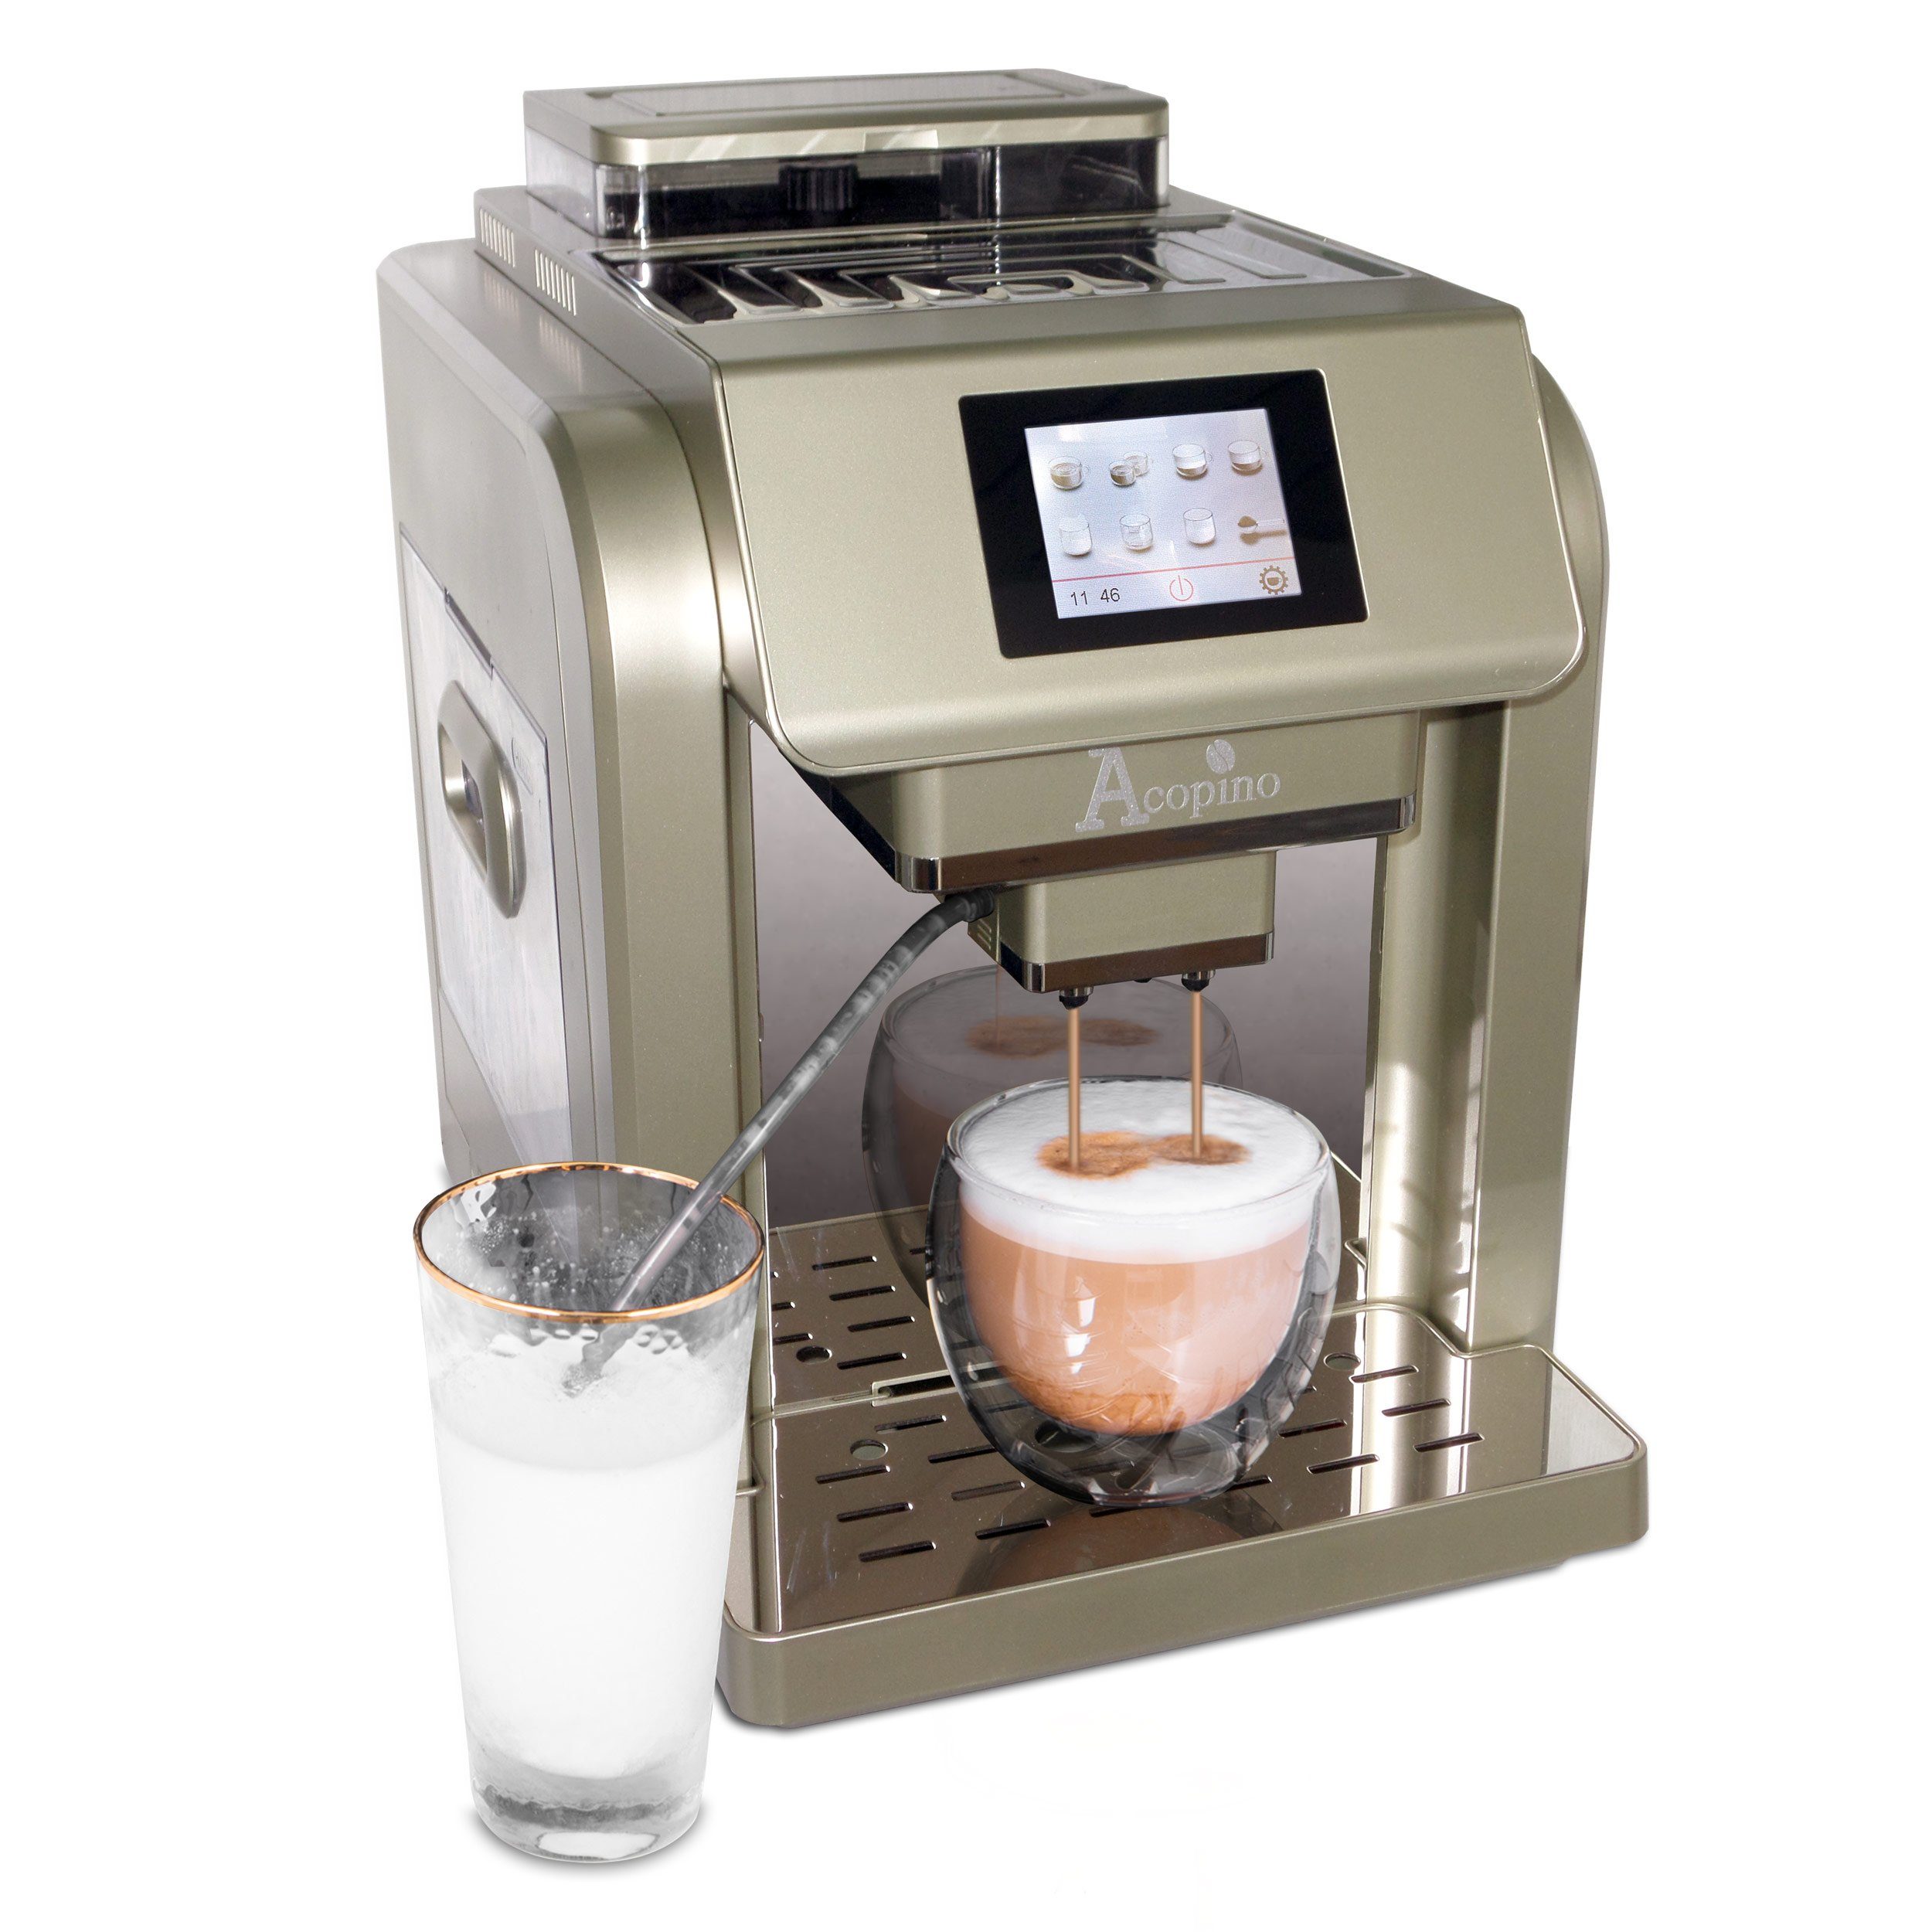 Acopino Kaffeevollautomat Monza One Touch, Besonders einfache Kaffeeherstellung durch One-Touch-Bedienung Champagner